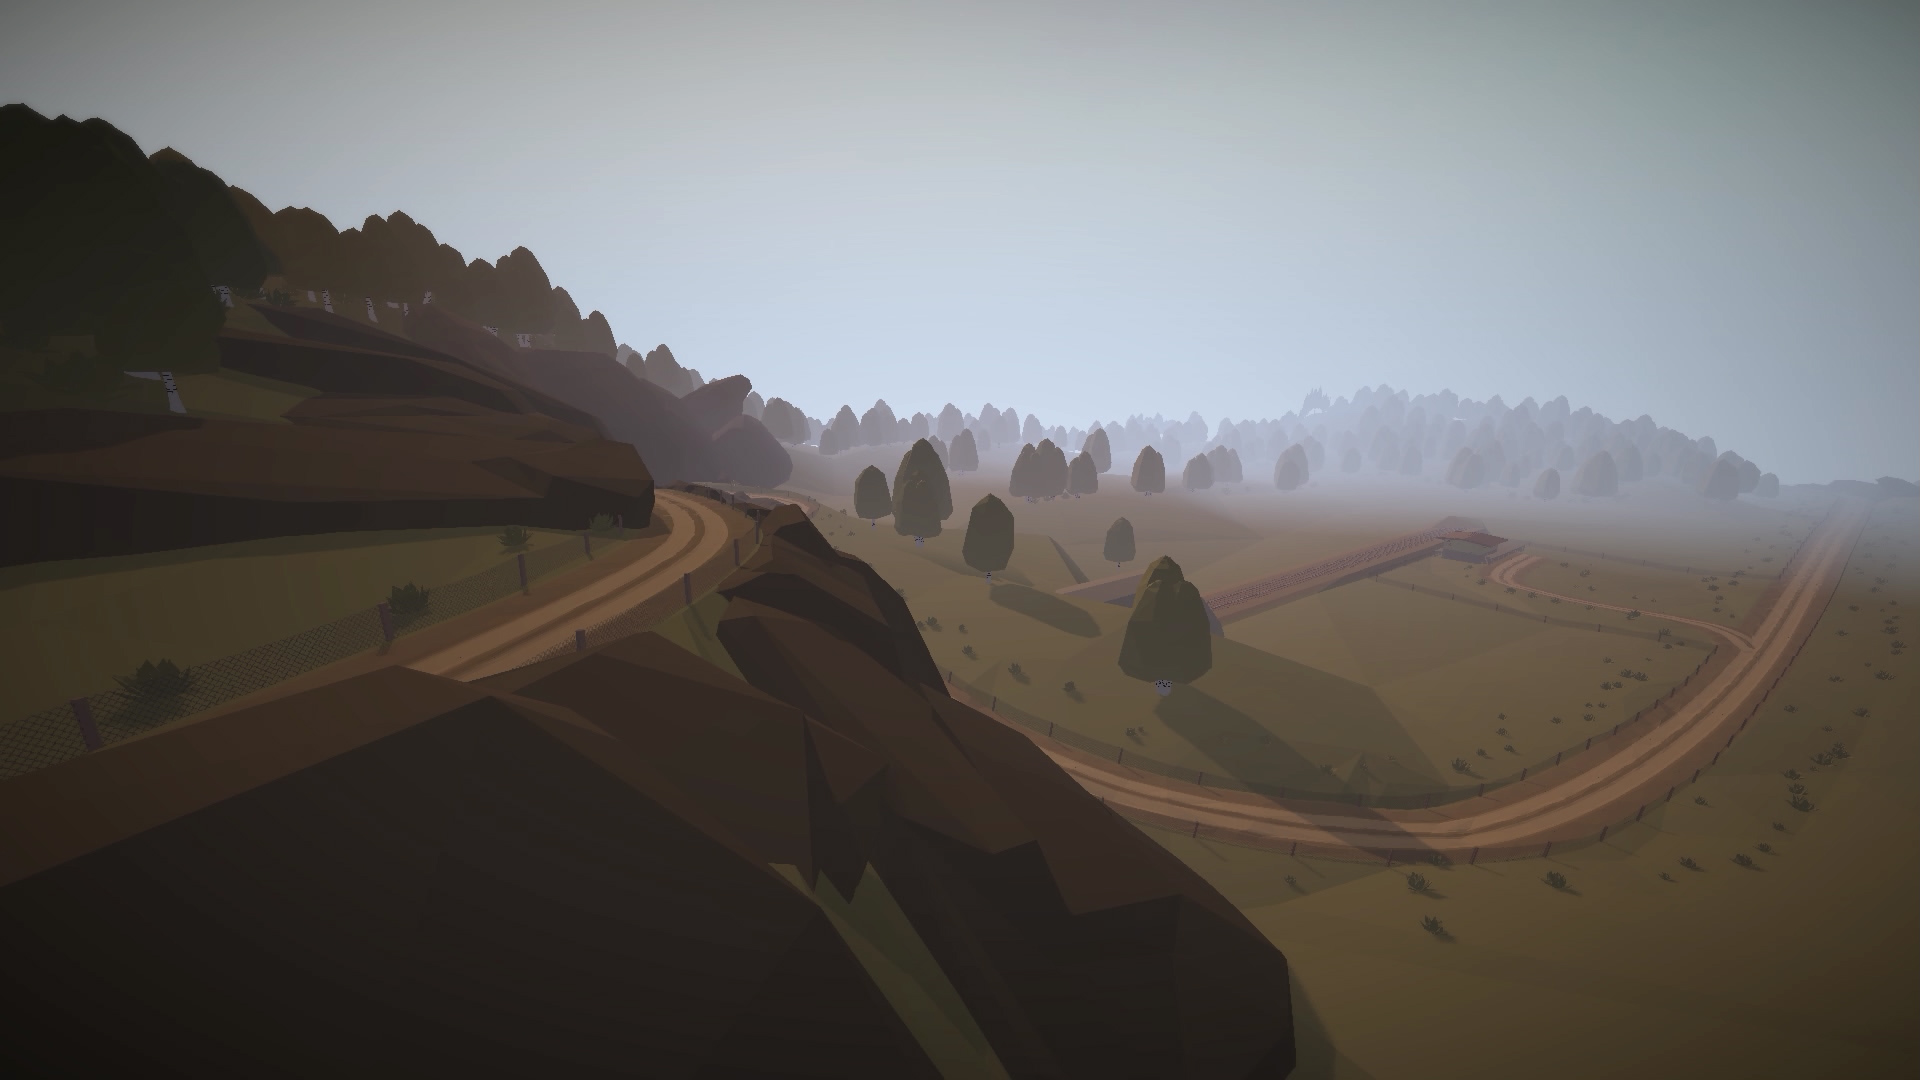 Jalopy - Road Trip Car Driving Simulator Indie Game screenshot